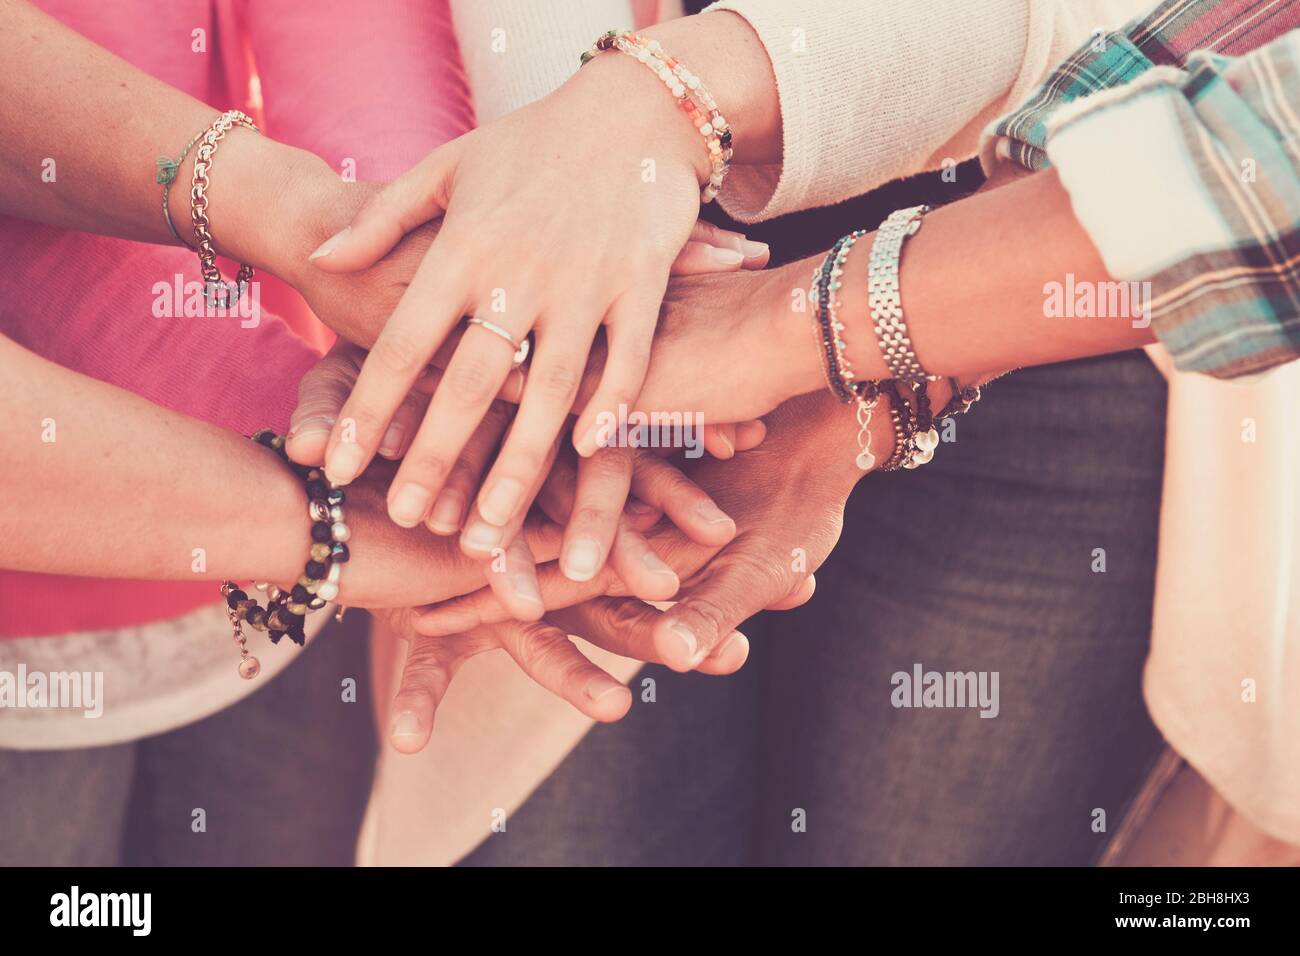 Lavoro di squadra e amicizia insieme concetto con le mani messe sulle mani - donne giorno di potere per il lavoro e gli amici - gente caucasica squadra in colori filtro vintage Foto Stock